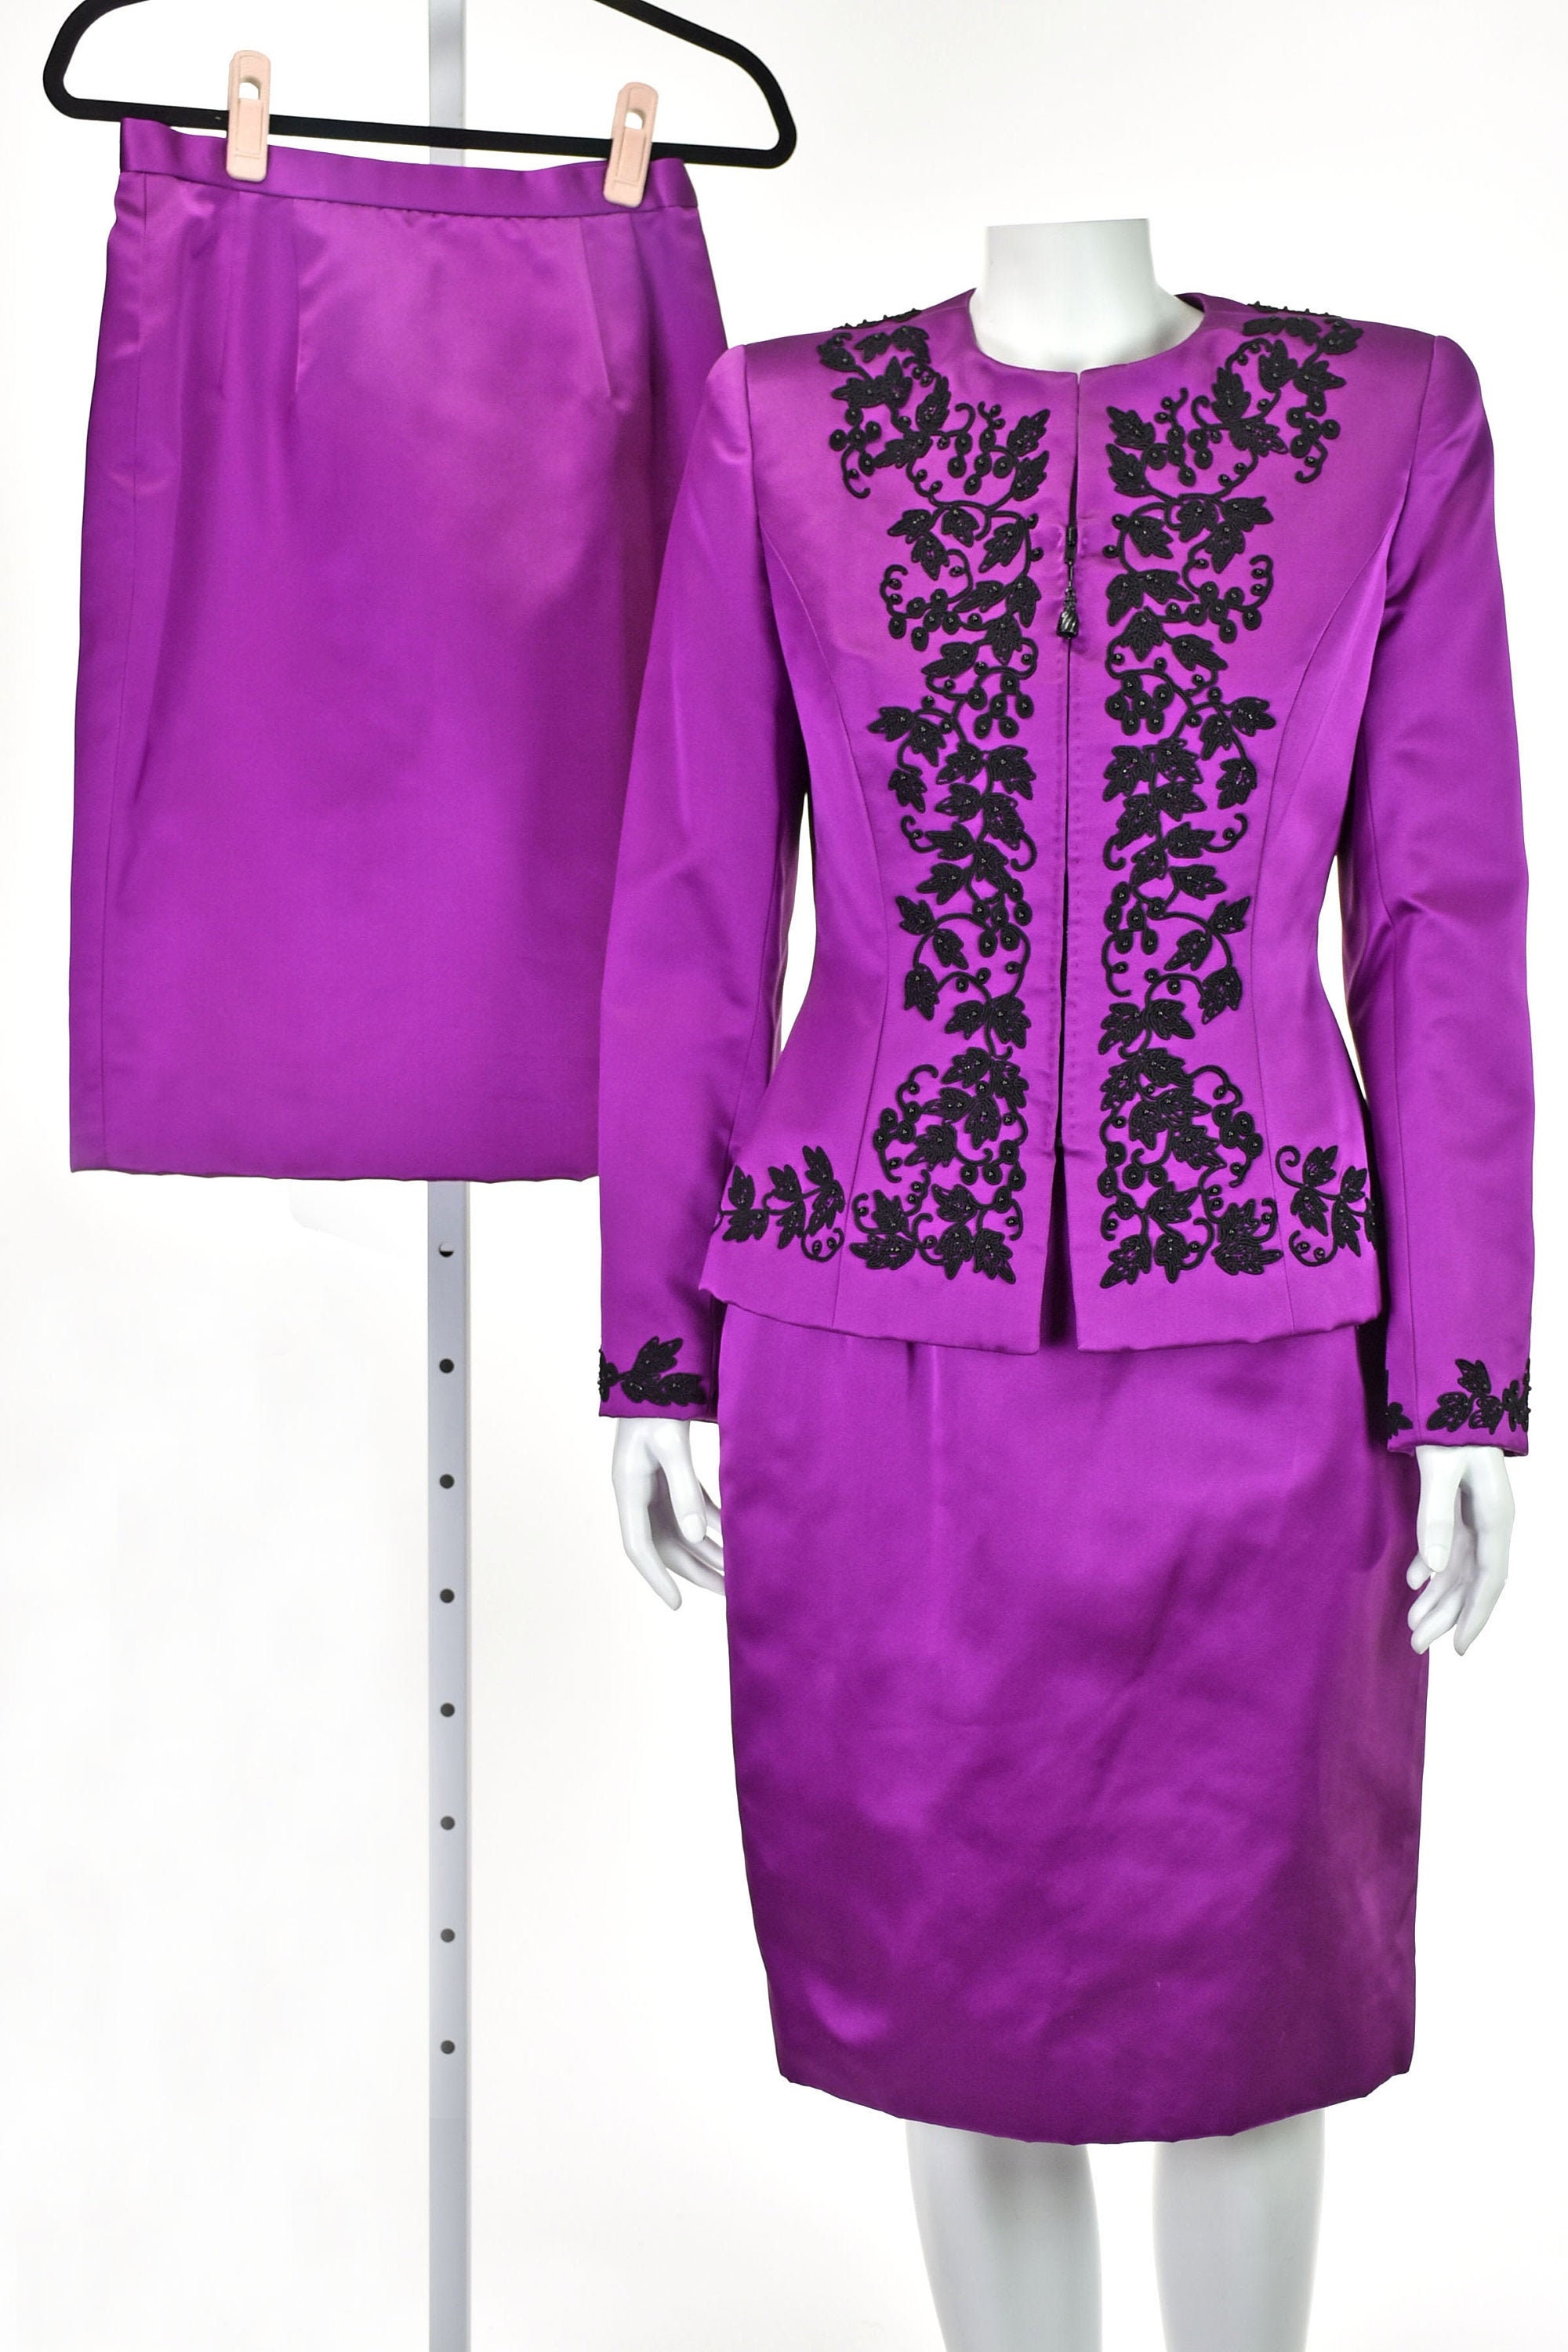 OSCAR de la RENTA Magenta Silk Satin Skirt Suit with TWO | Etsy